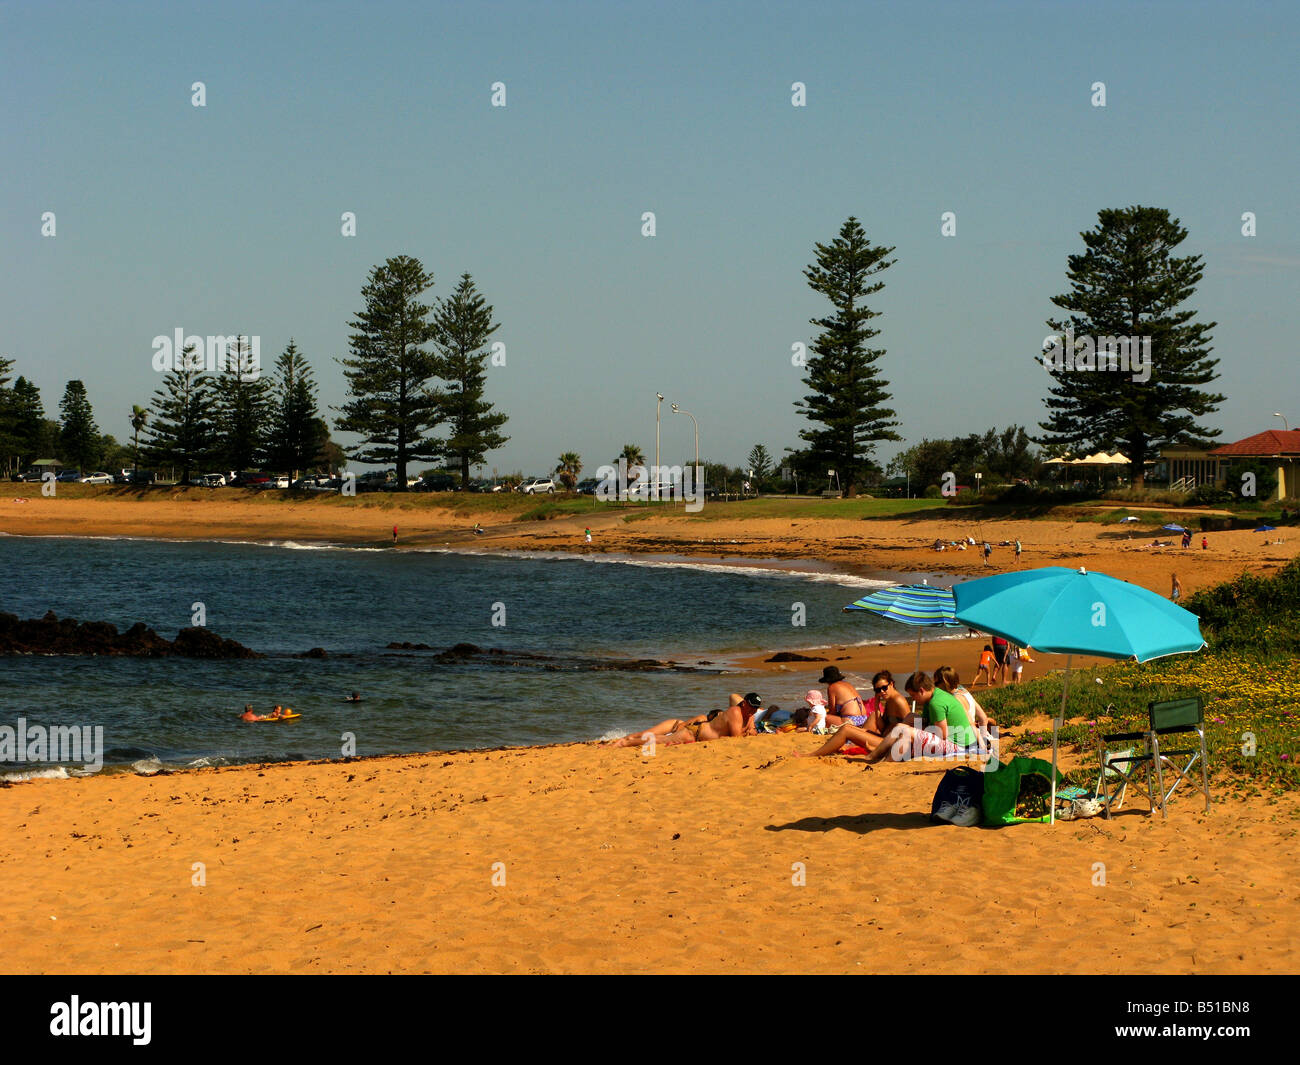 Les gens se reposent sur un jour d'été en Australie Banque D'Images